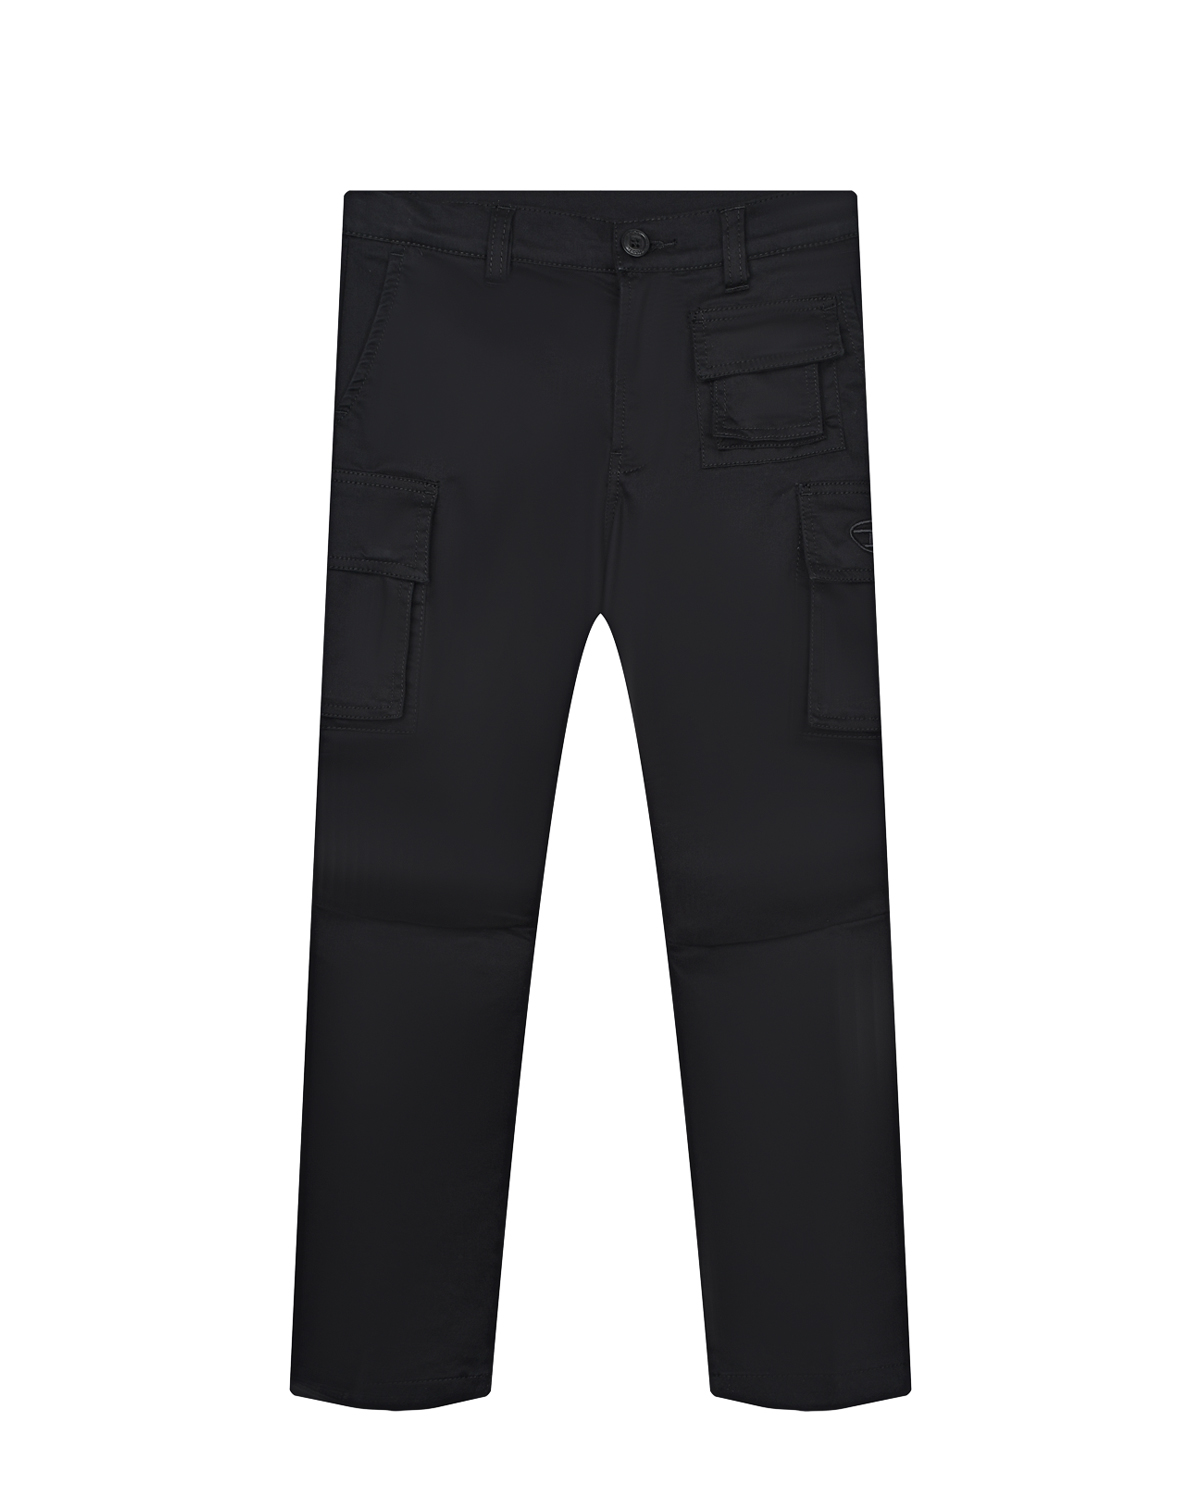 Черные брюки с накладными карманами Diesel детские, размер 152, цвет черный